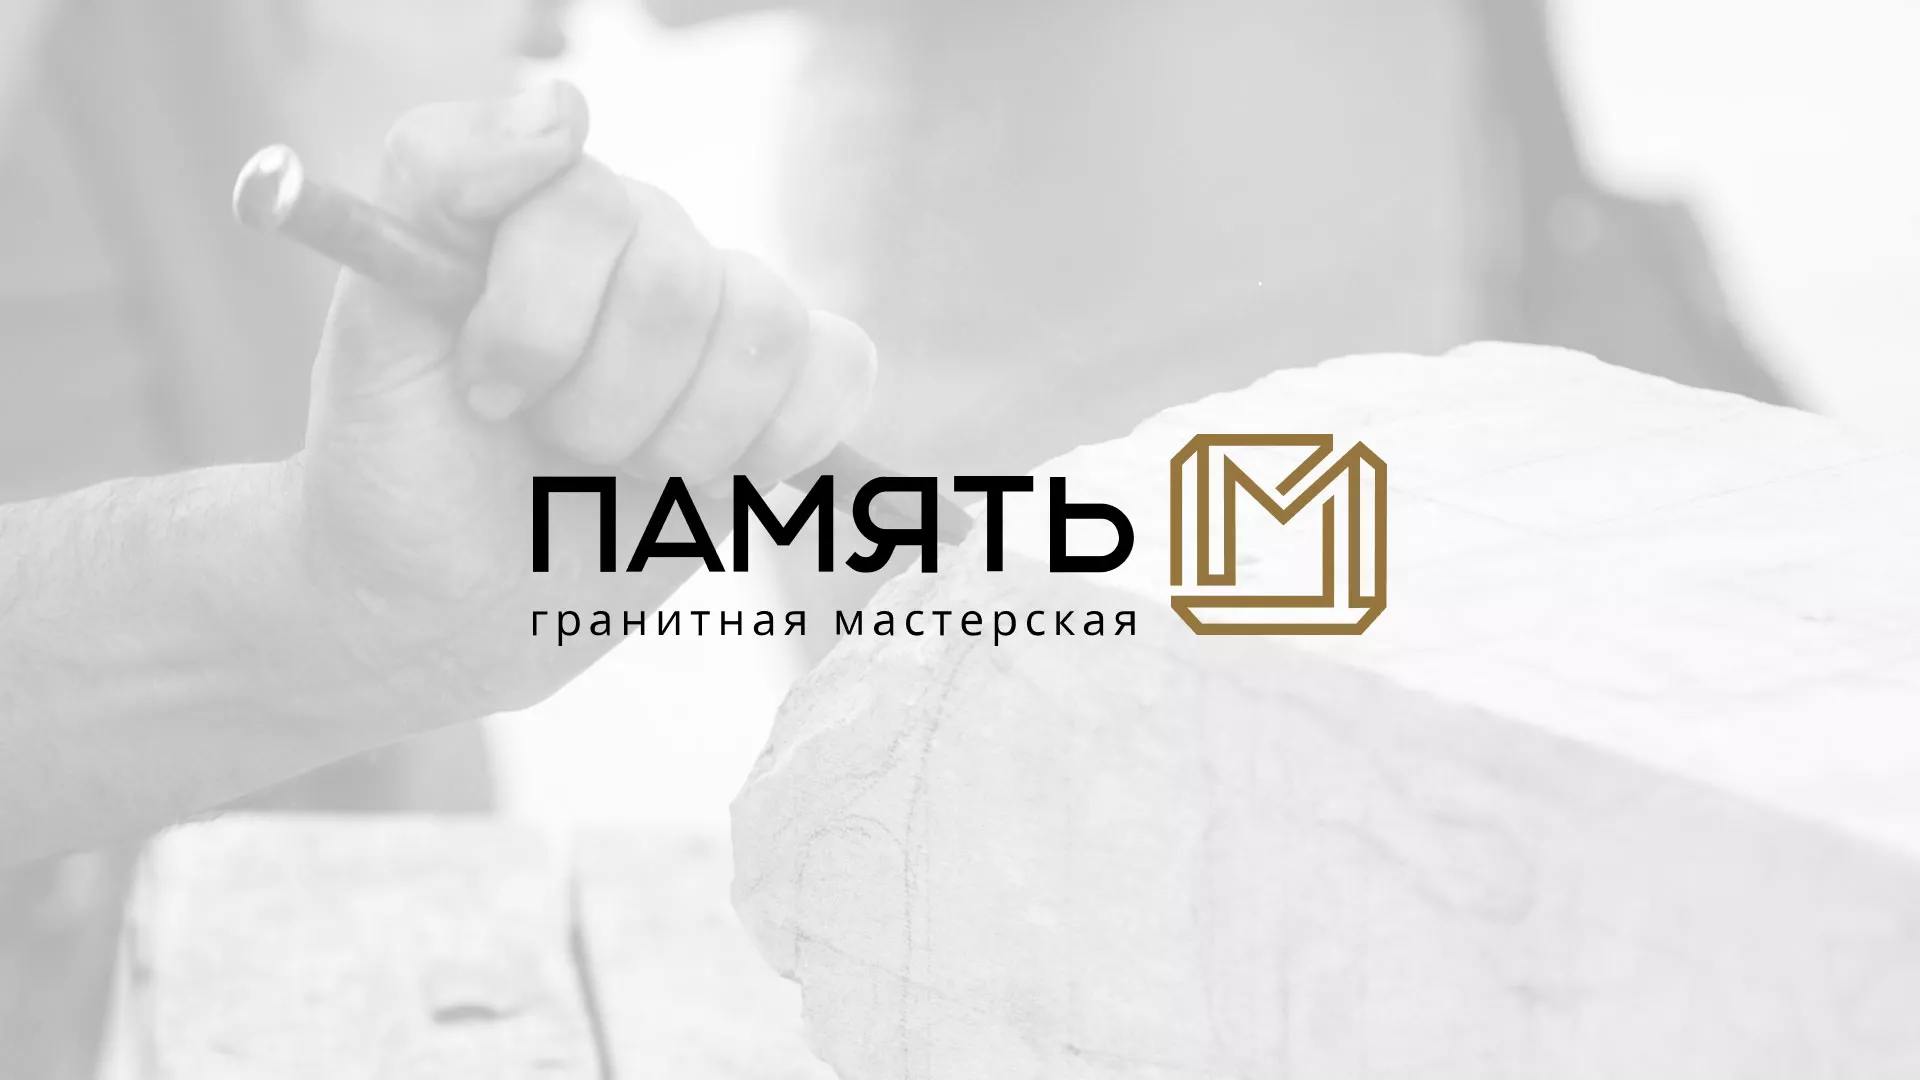 Разработка логотипа и сайта компании «Память-М» в Гаджиево